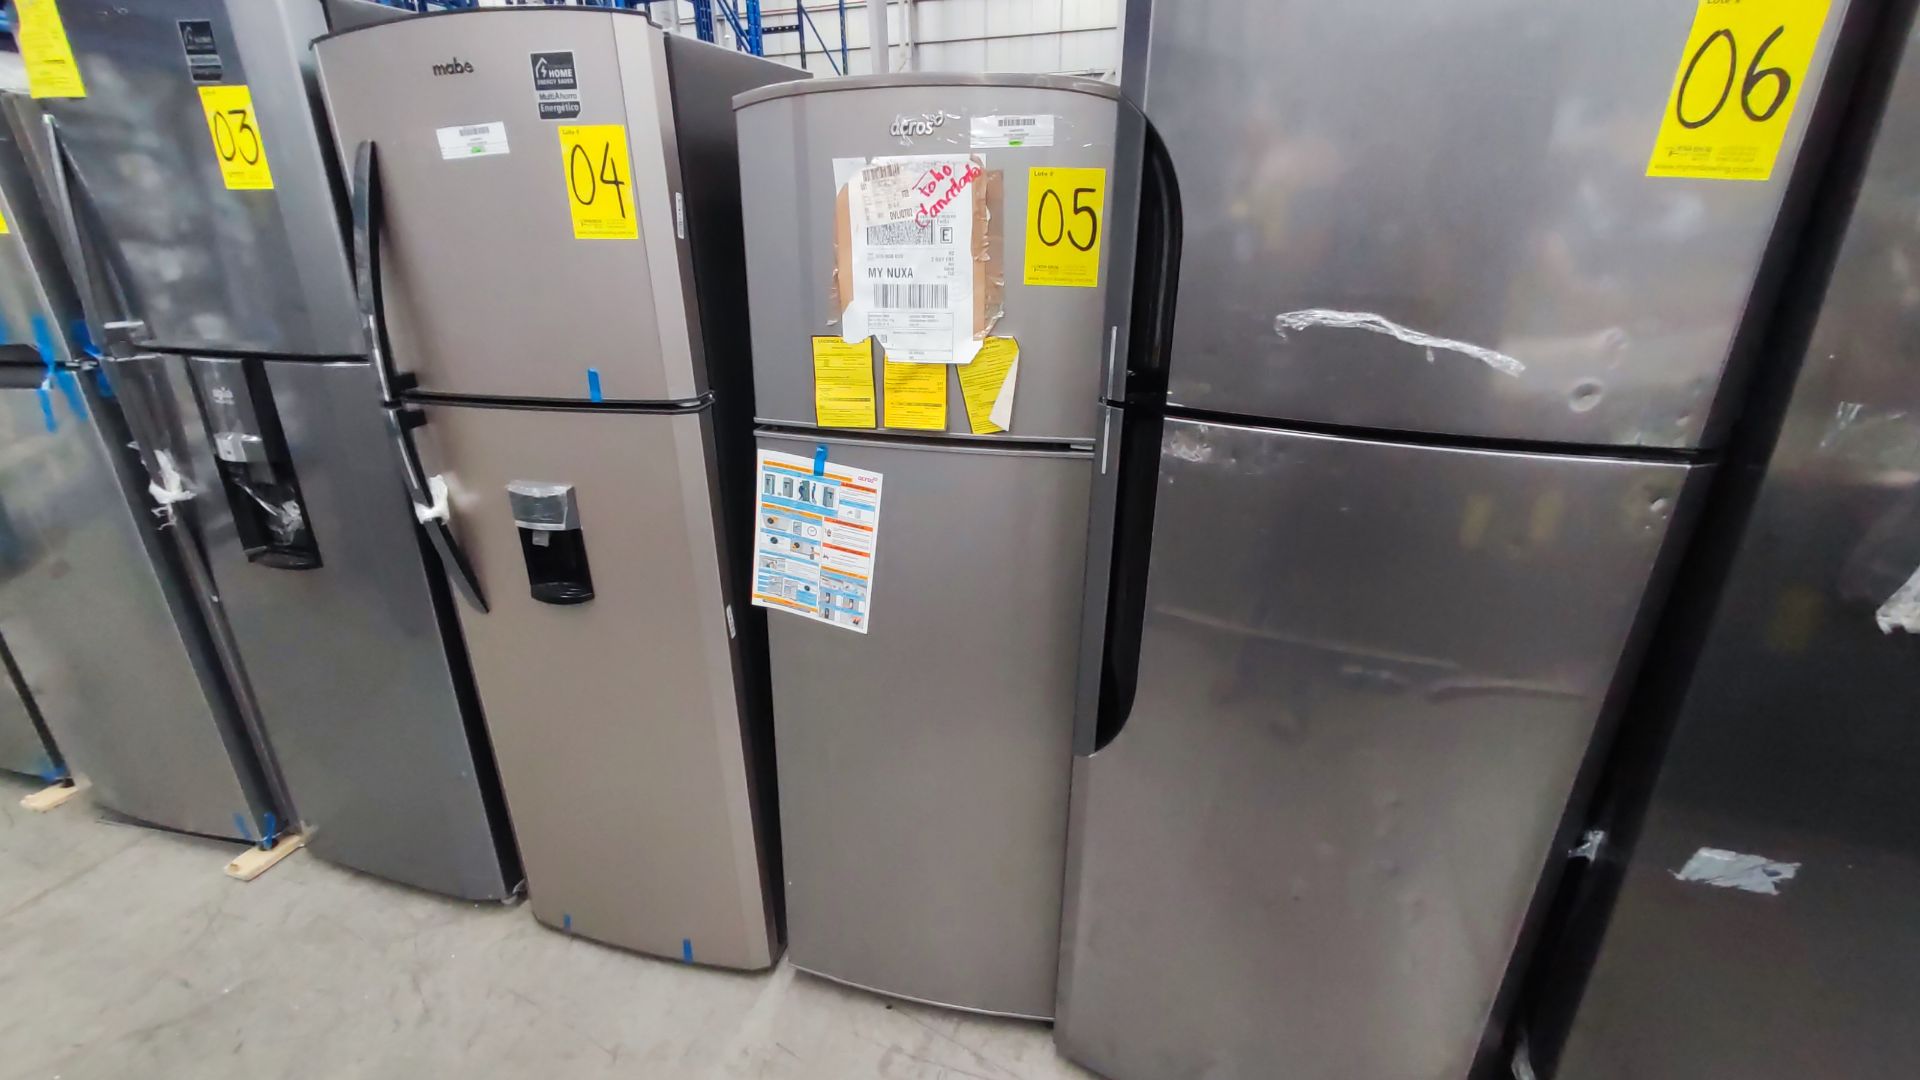 1 Refrigerador Marca Whirlpool, Modelo AT9007G03, Serie 1333816, Color Gris Detalles Estéticos. Fav - Image 7 of 12